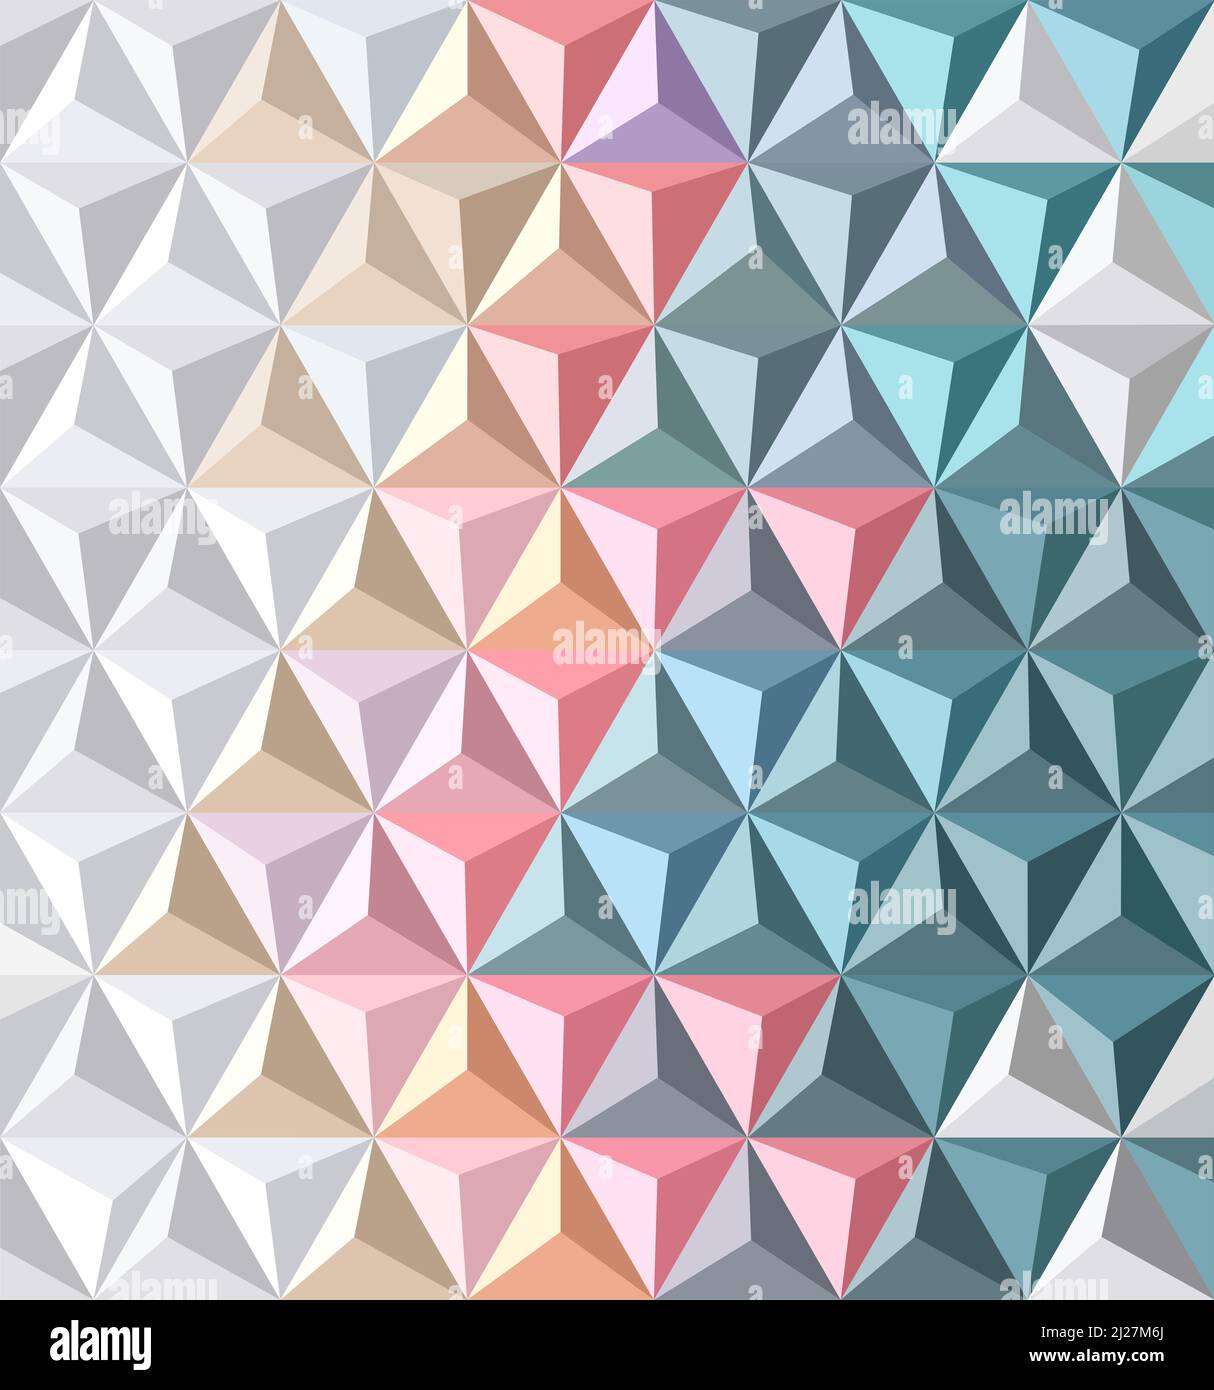 Motif triangulaire géométrique - arrière-plan abstrait - illustration vectorielle Banque D'Images